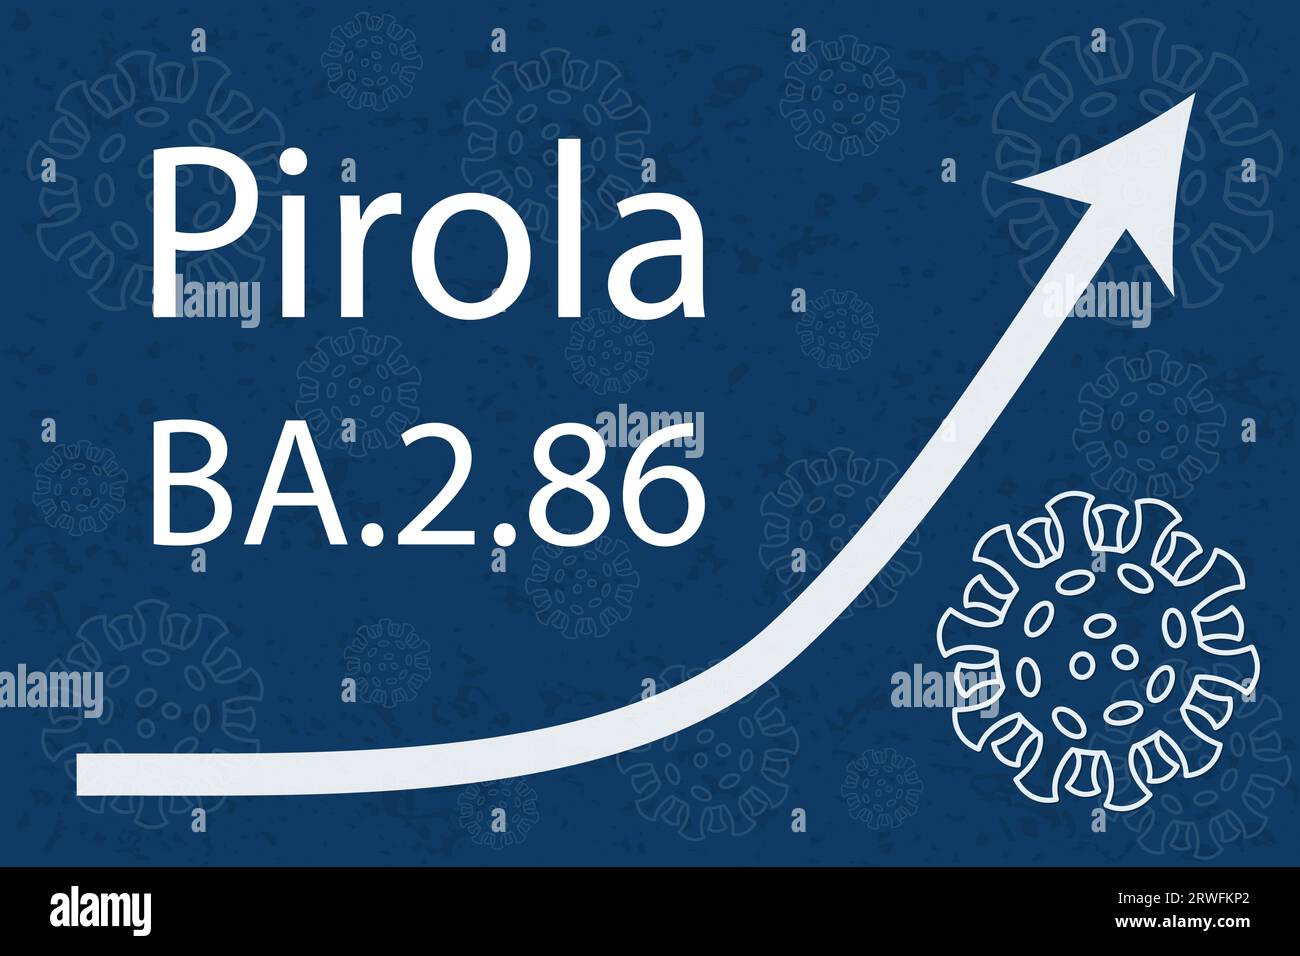 Une nouvelle variante Omicron Pirola (BA.2,86). La flèche montre une augmentation spectaculaire de la maladie. Texte blanc sur fond bleu foncé avec des images de coronavirus. Illustration de Vecteur